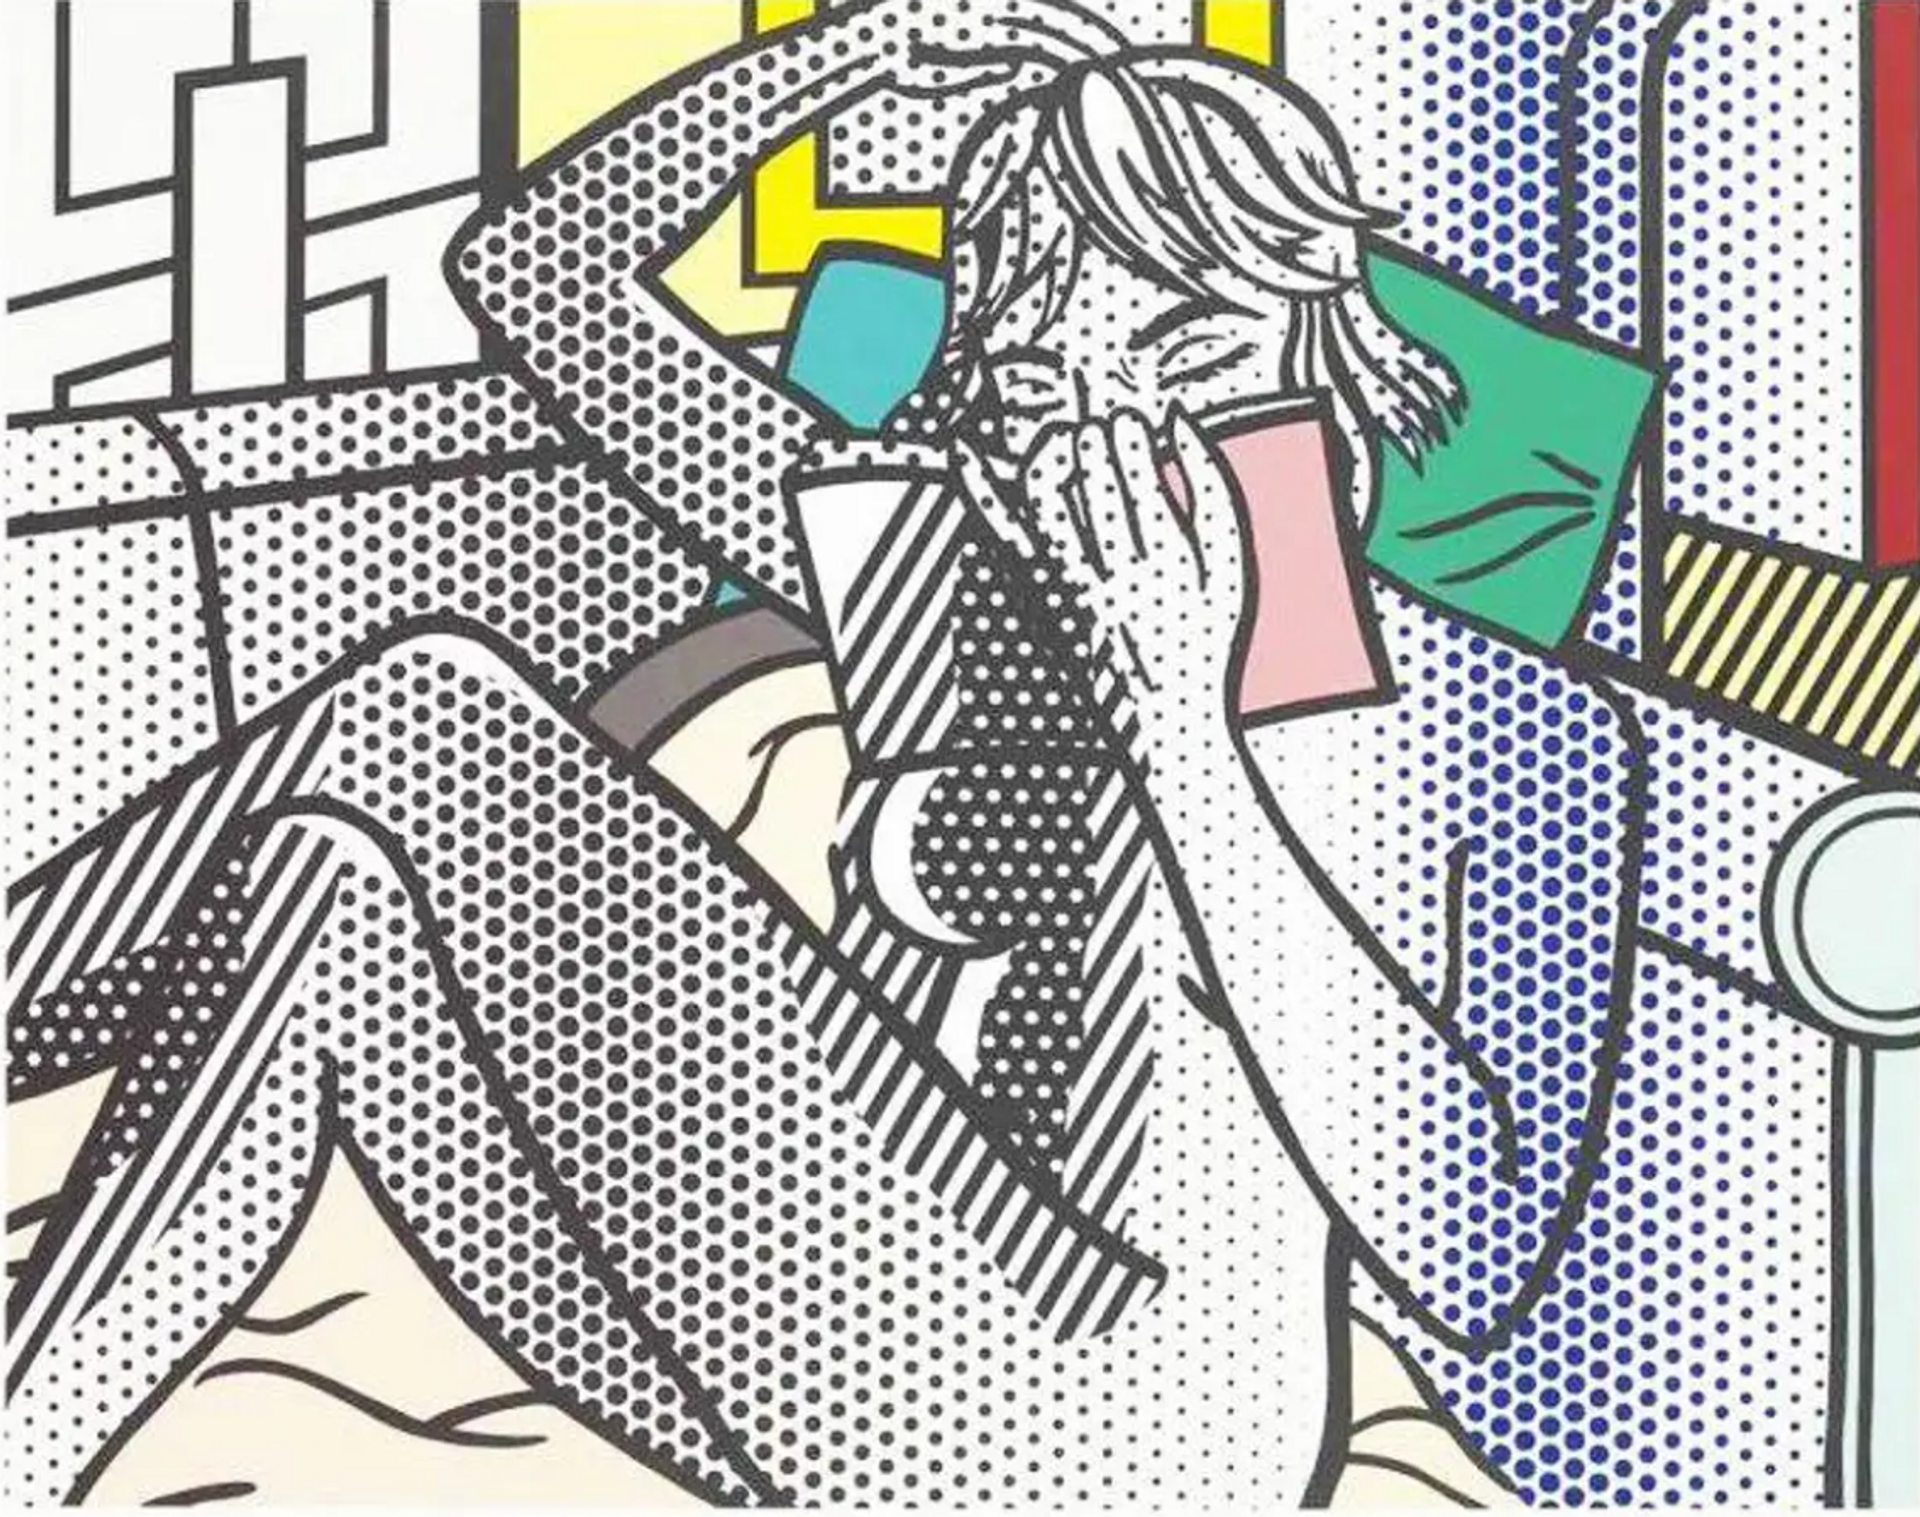 10 Facts About Roy Lichtenstein's Nudes